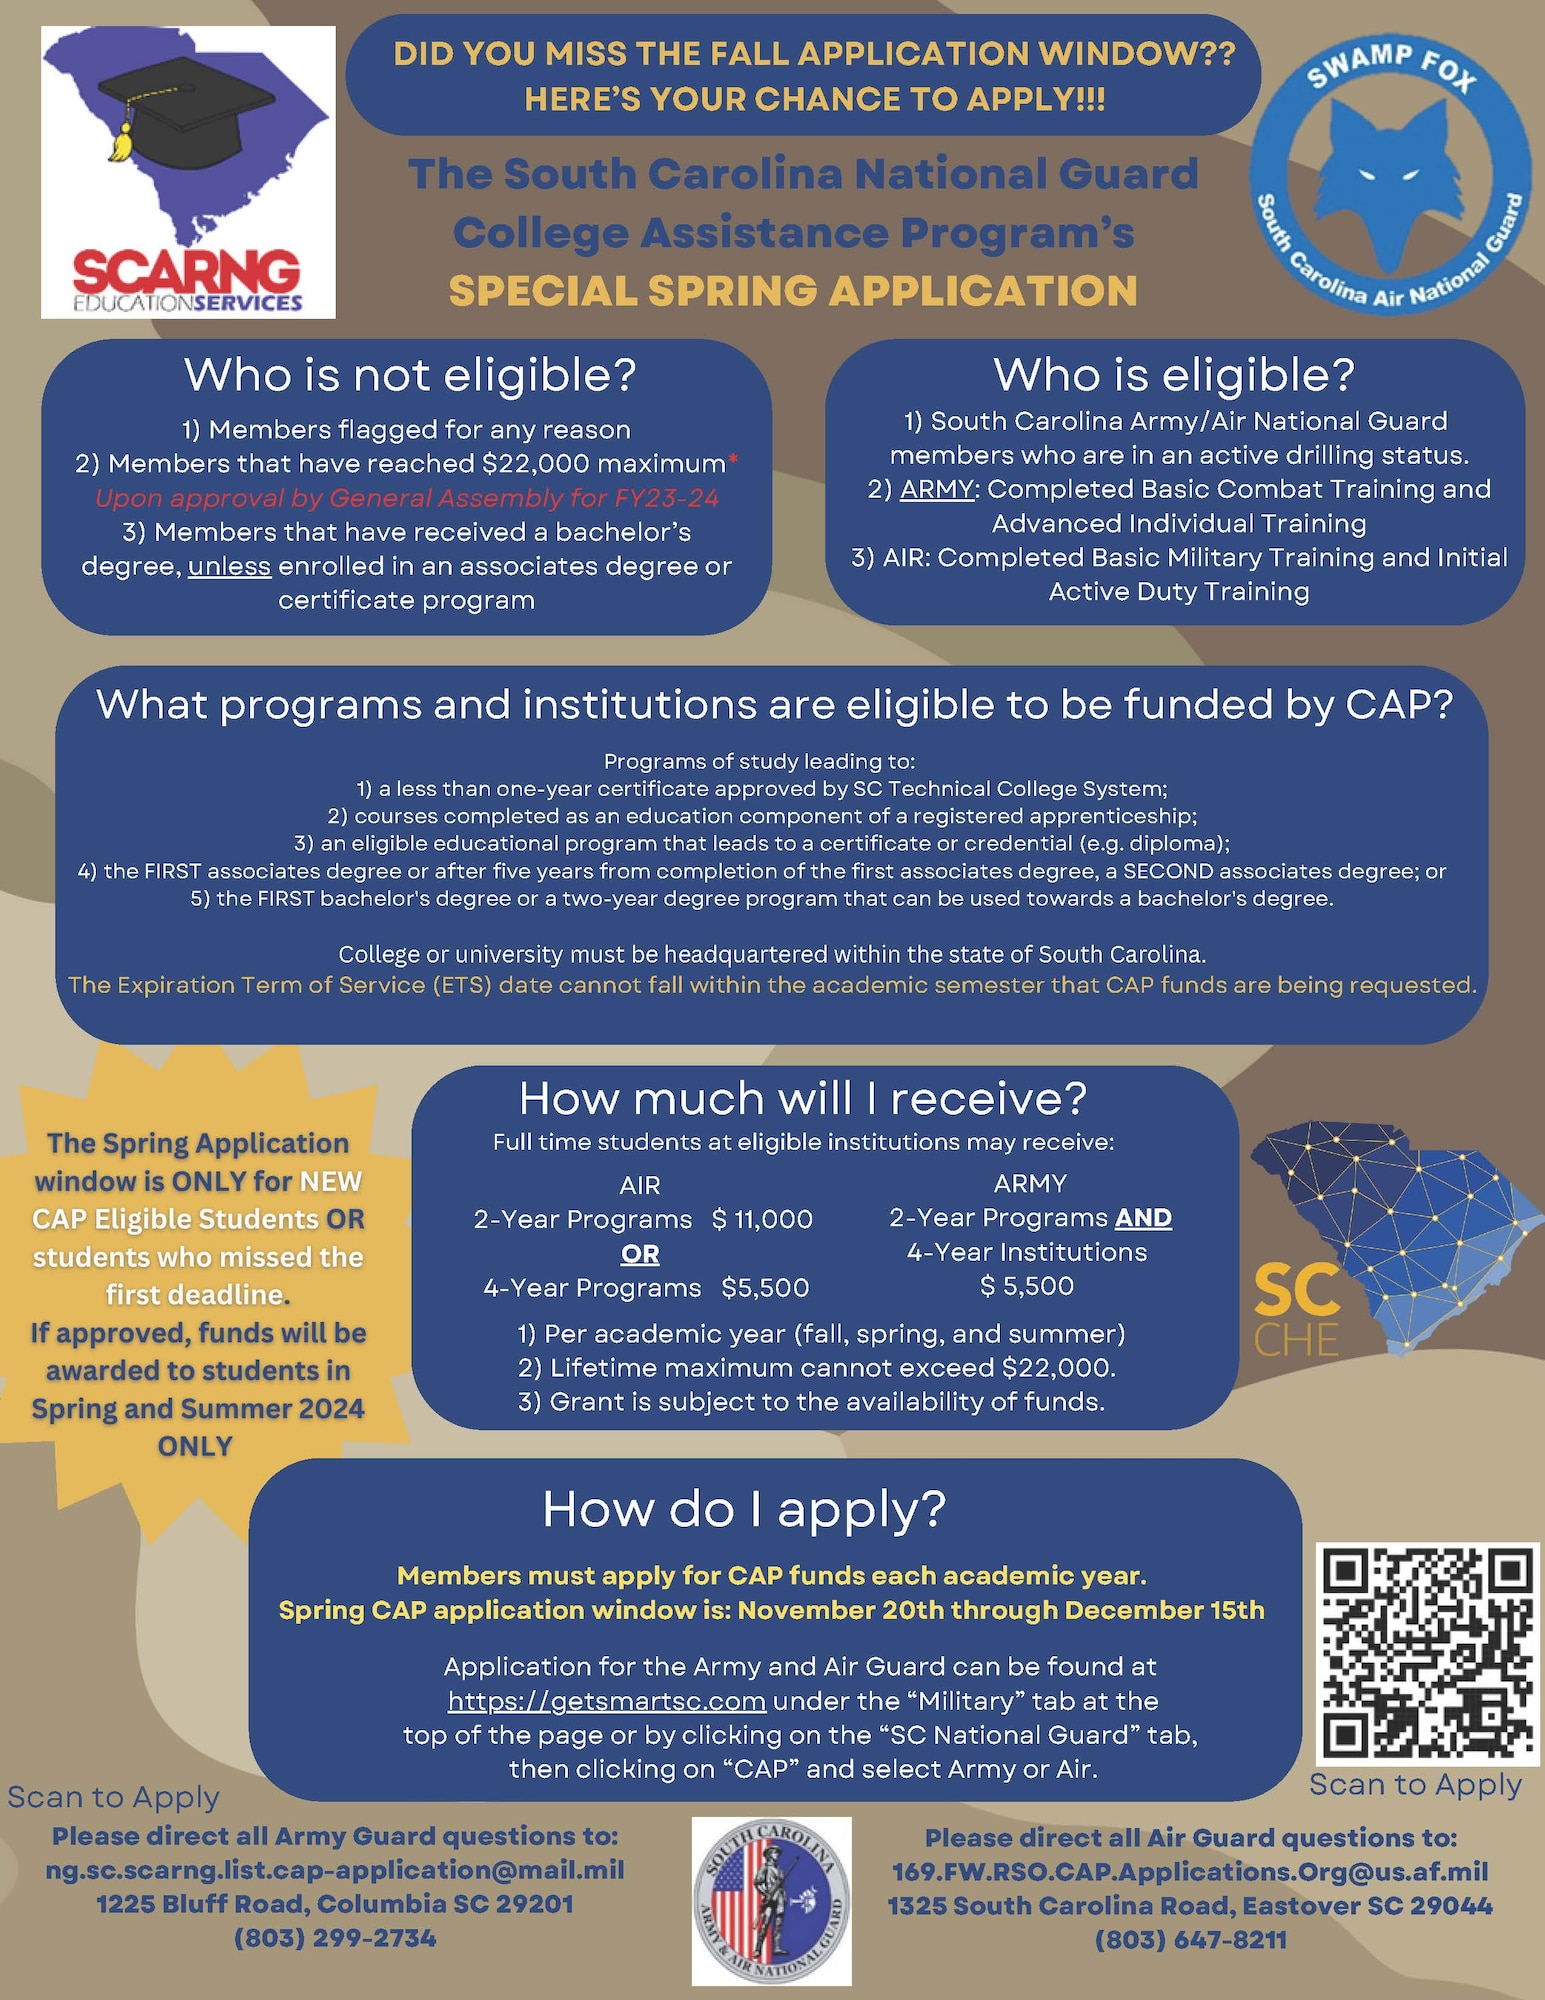 SCNG College Assistance Program spring application, November 20-December 15